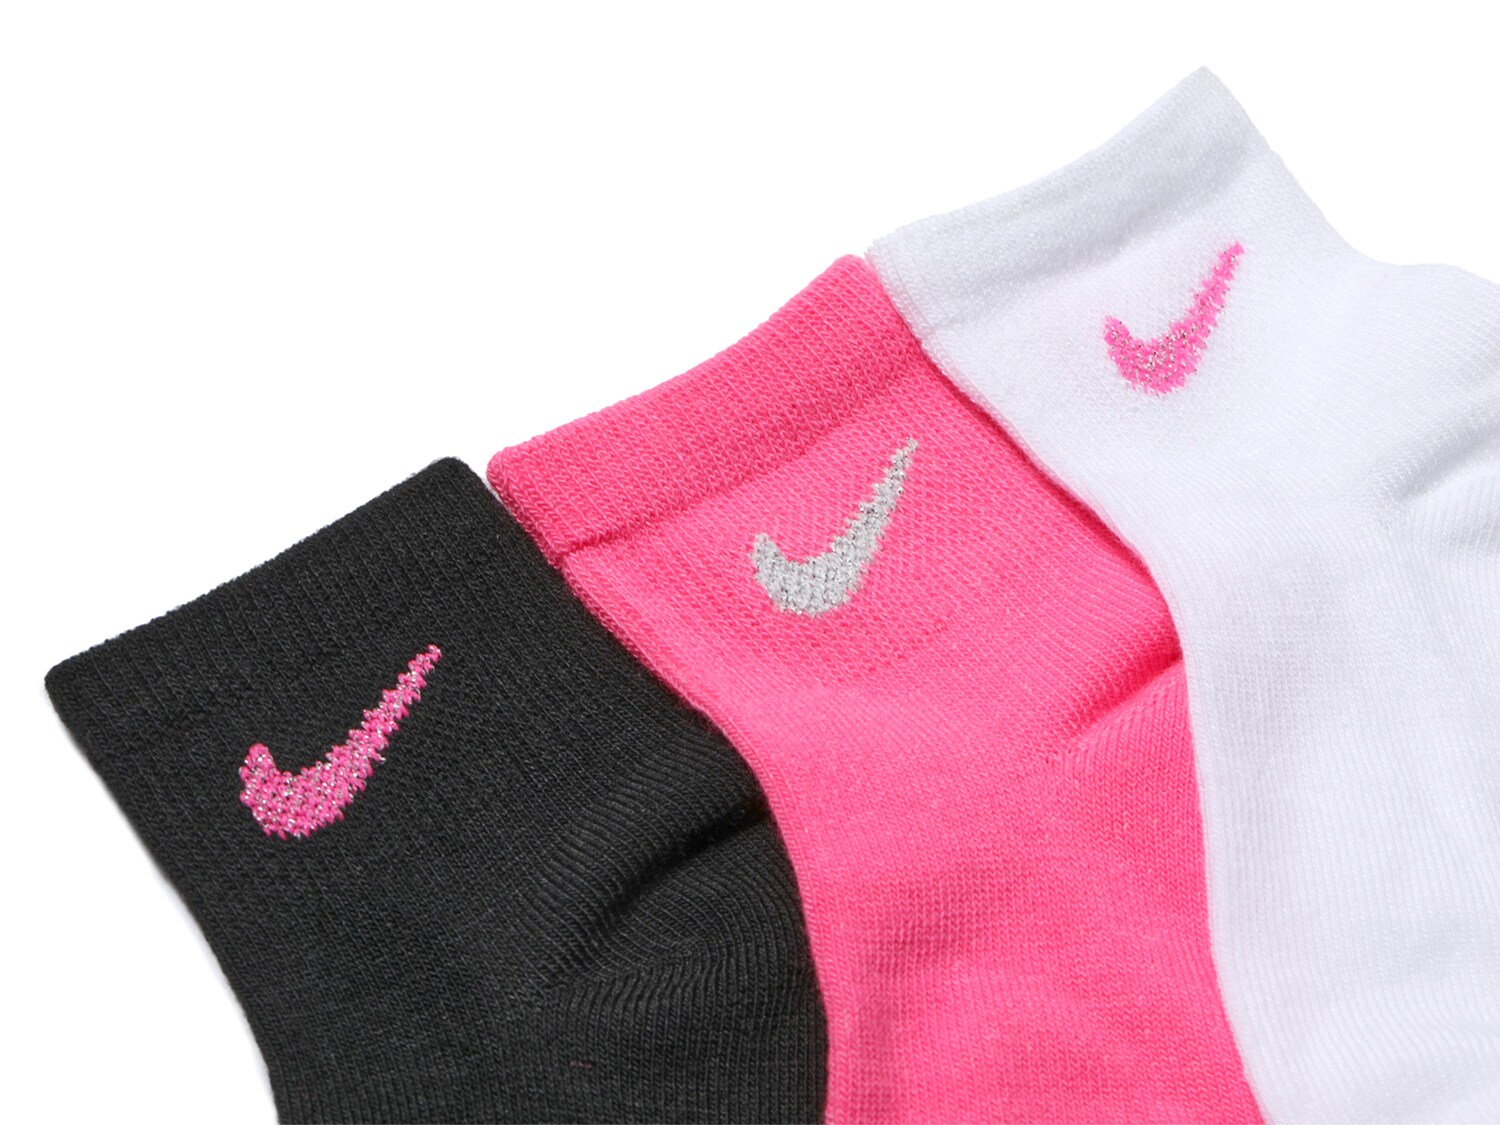 anushree dalmia recommends Pink Nike Ankle Socks